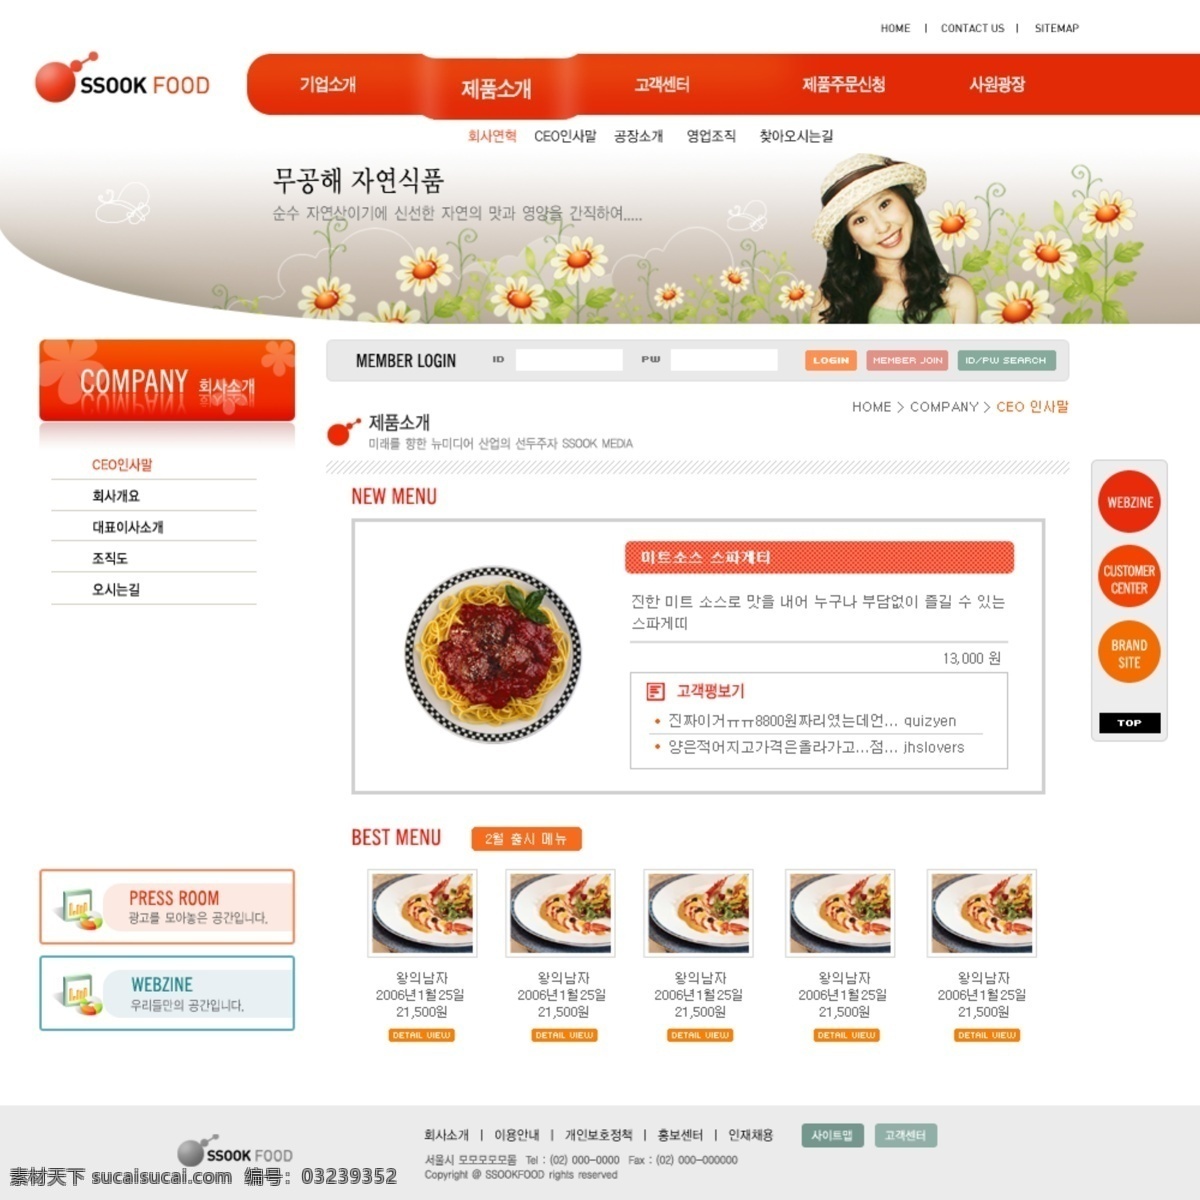 韩国 网页设计 动漫 韩国模板 红色导航 花 简洁 美女 模板 菜 网页模板 源文件 网页素材